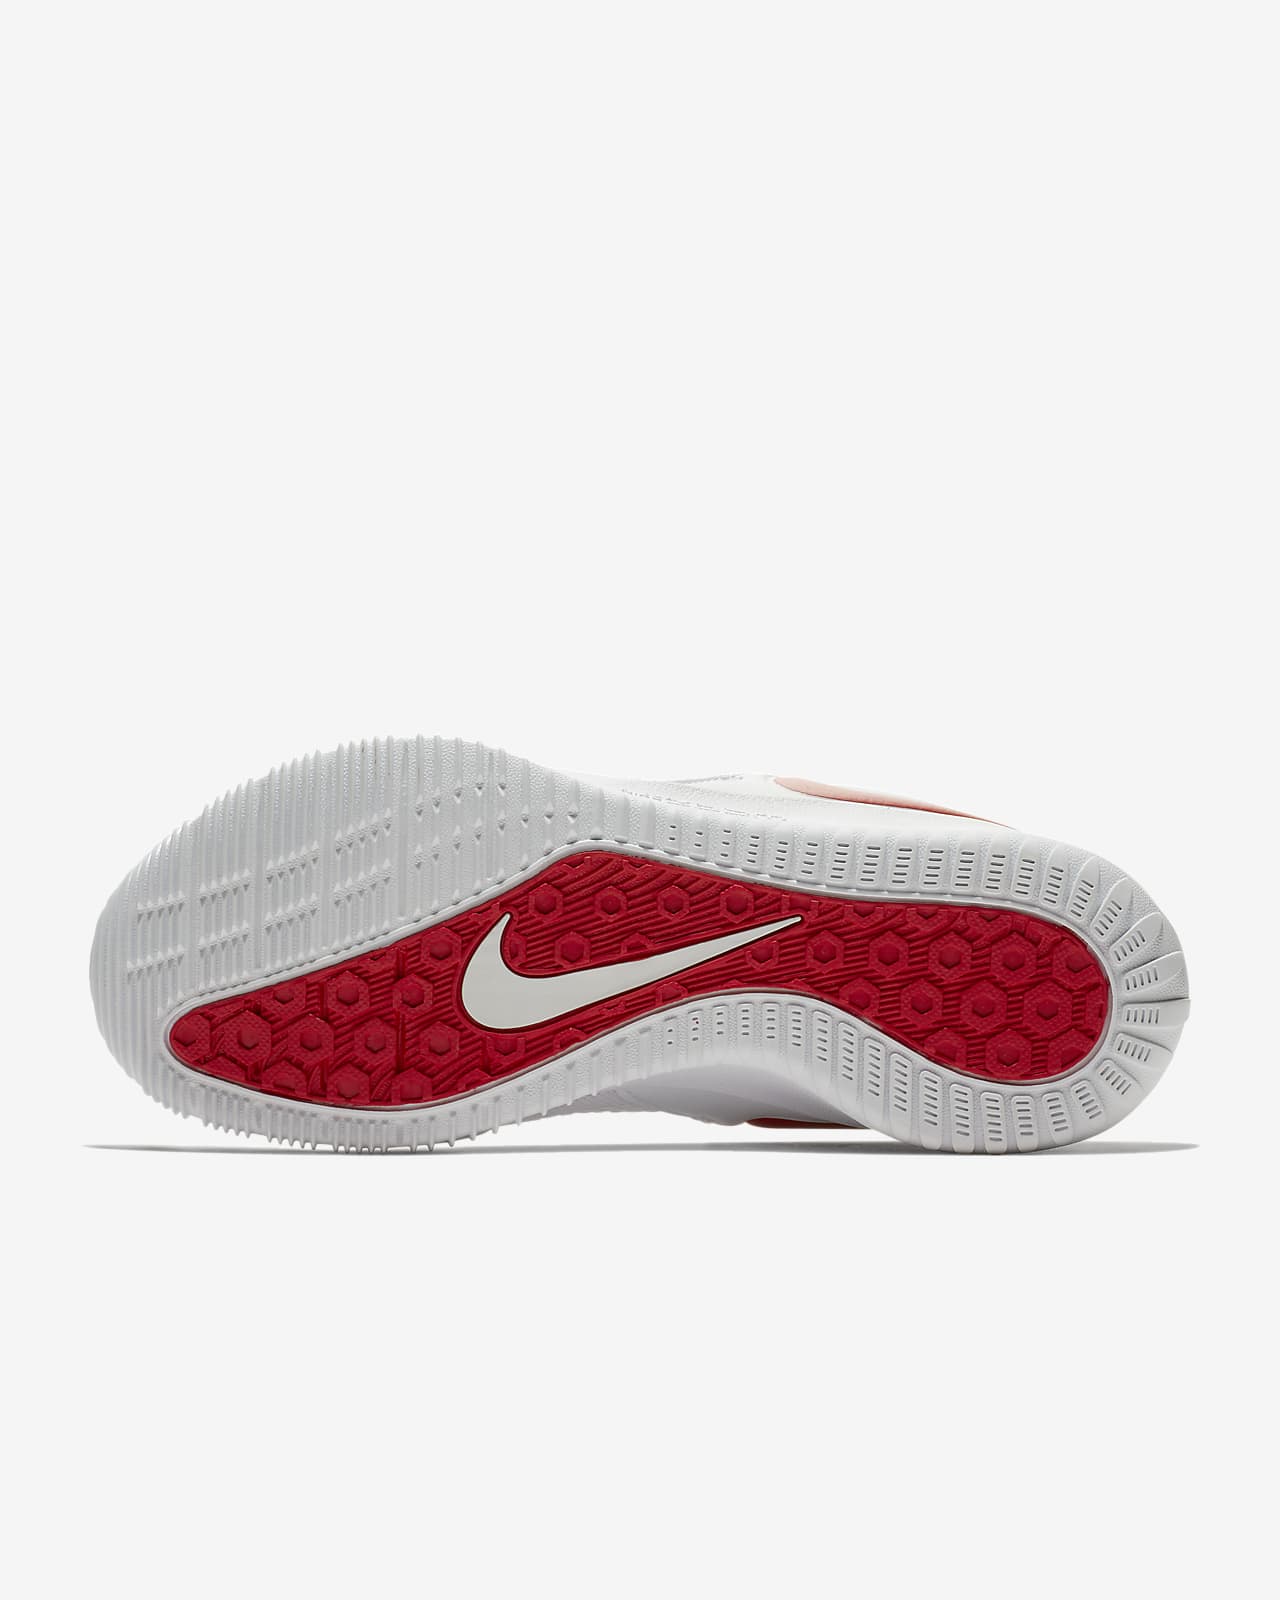 Nike Zoom HyperAce 2 Women's Volleyball Shoe